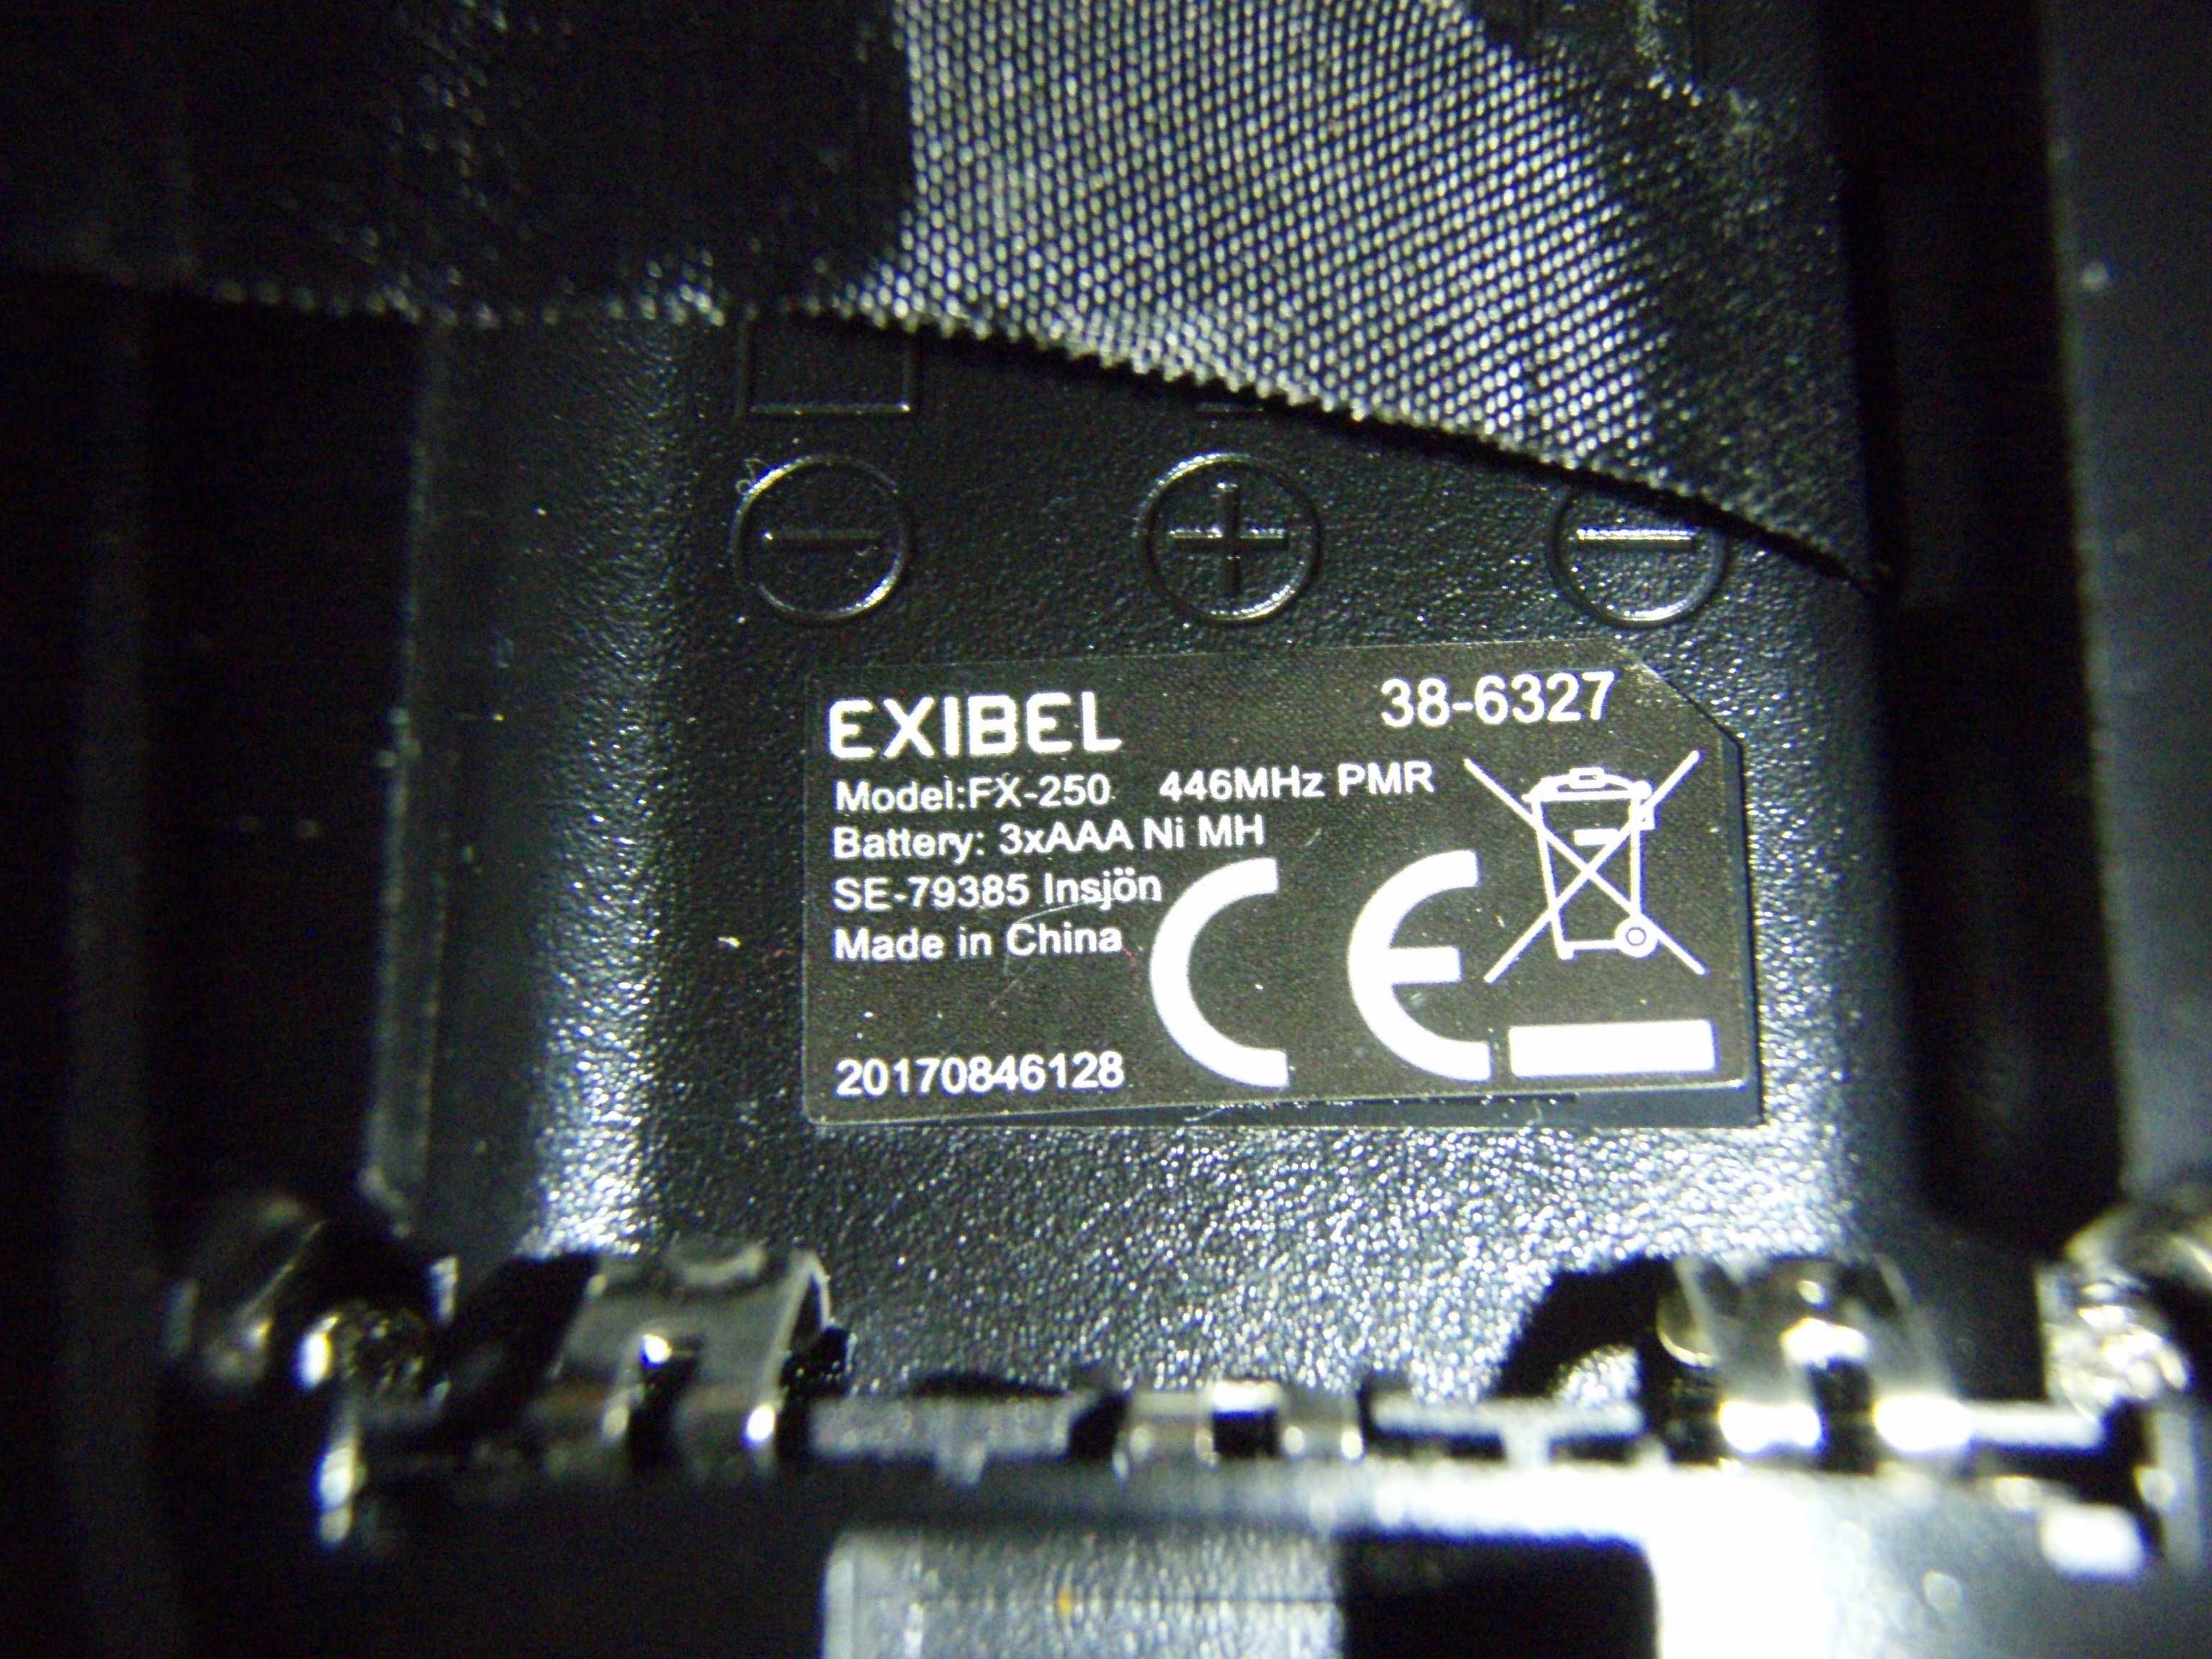 Statie radio portabila Exibel FX-250 446Mhz PMR + dock incarcare